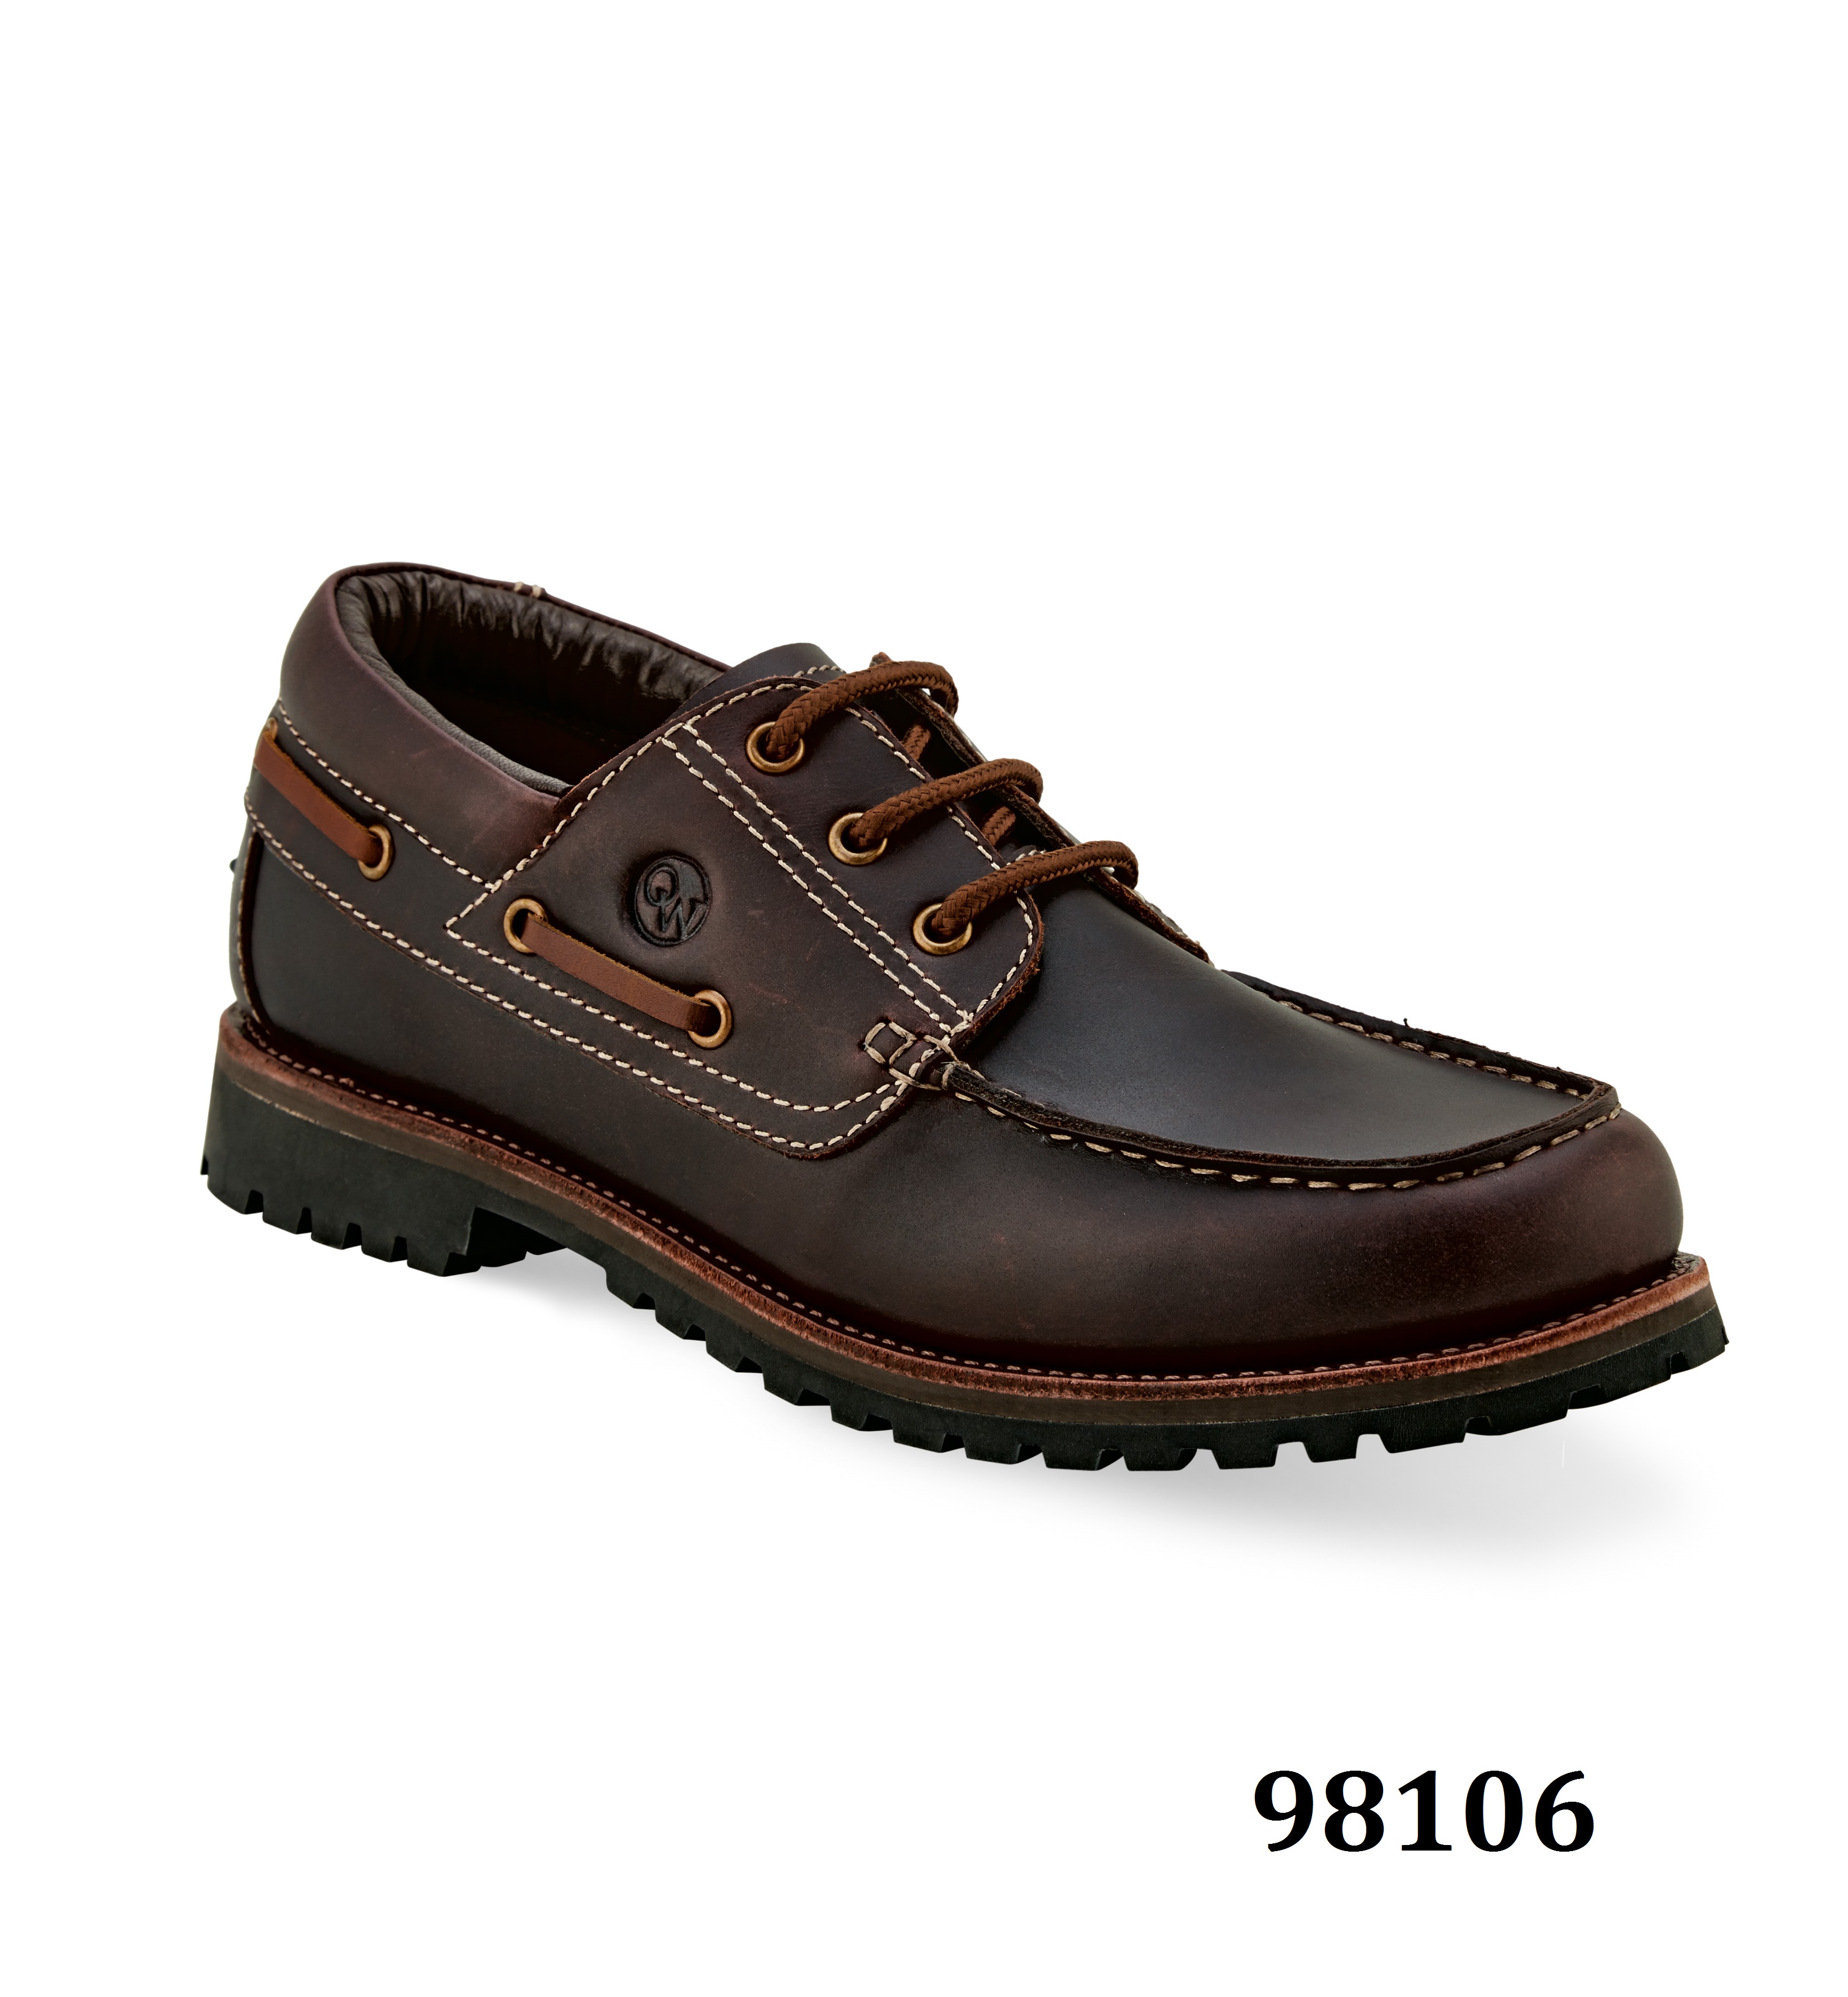 Men's outdoor boots 98106 Elite